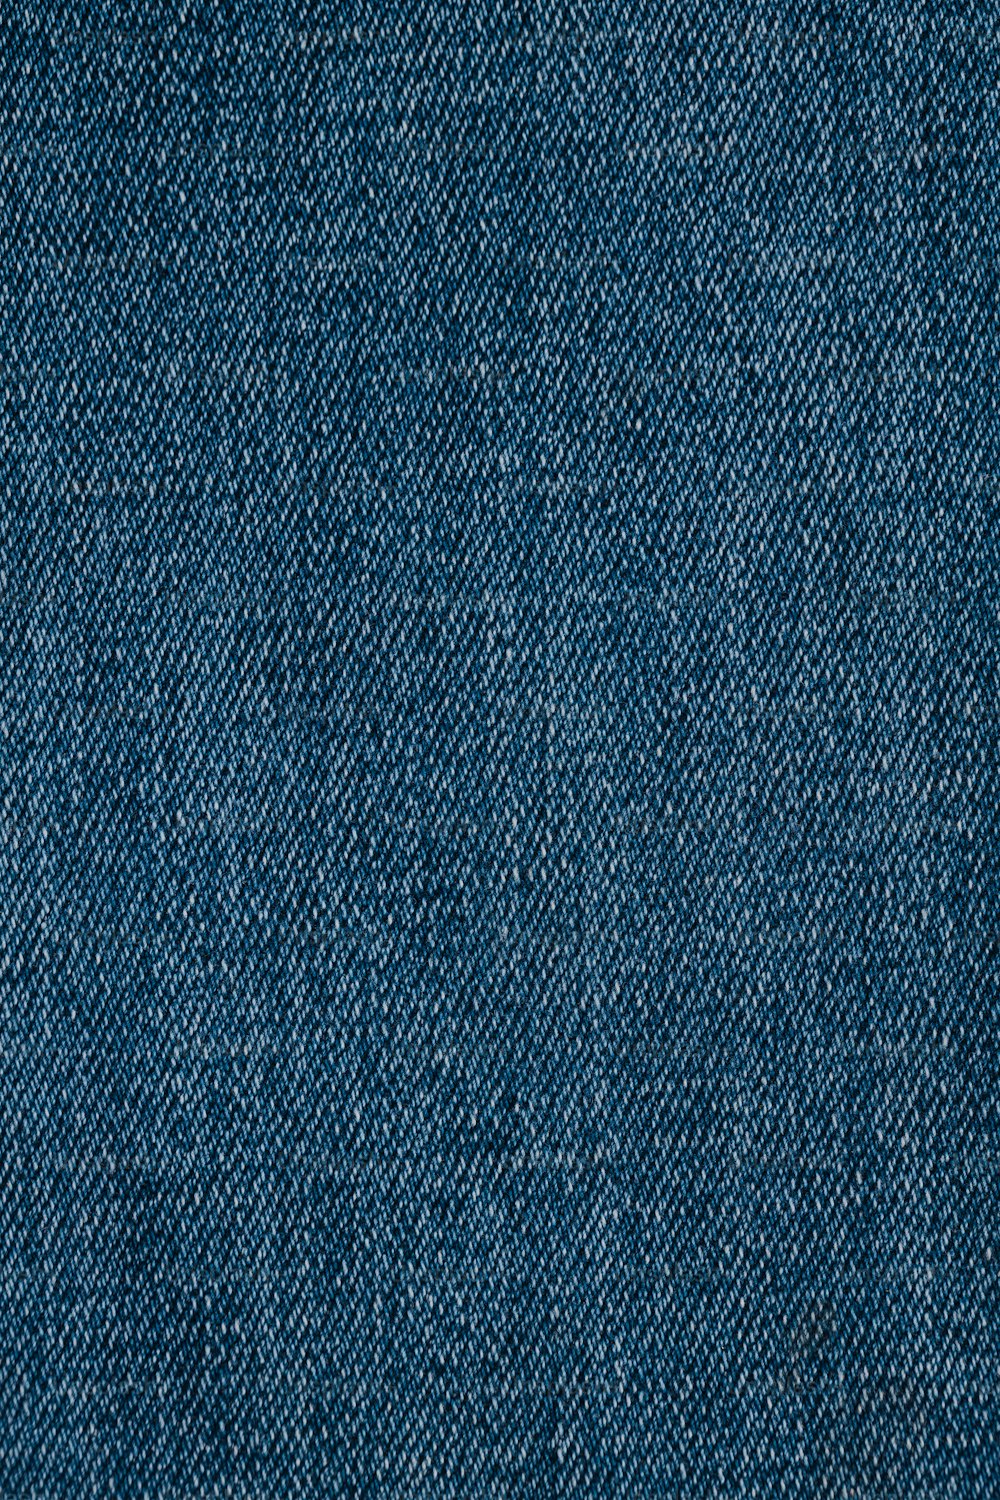 Un primer plano de una textura de tela de mezclilla azul